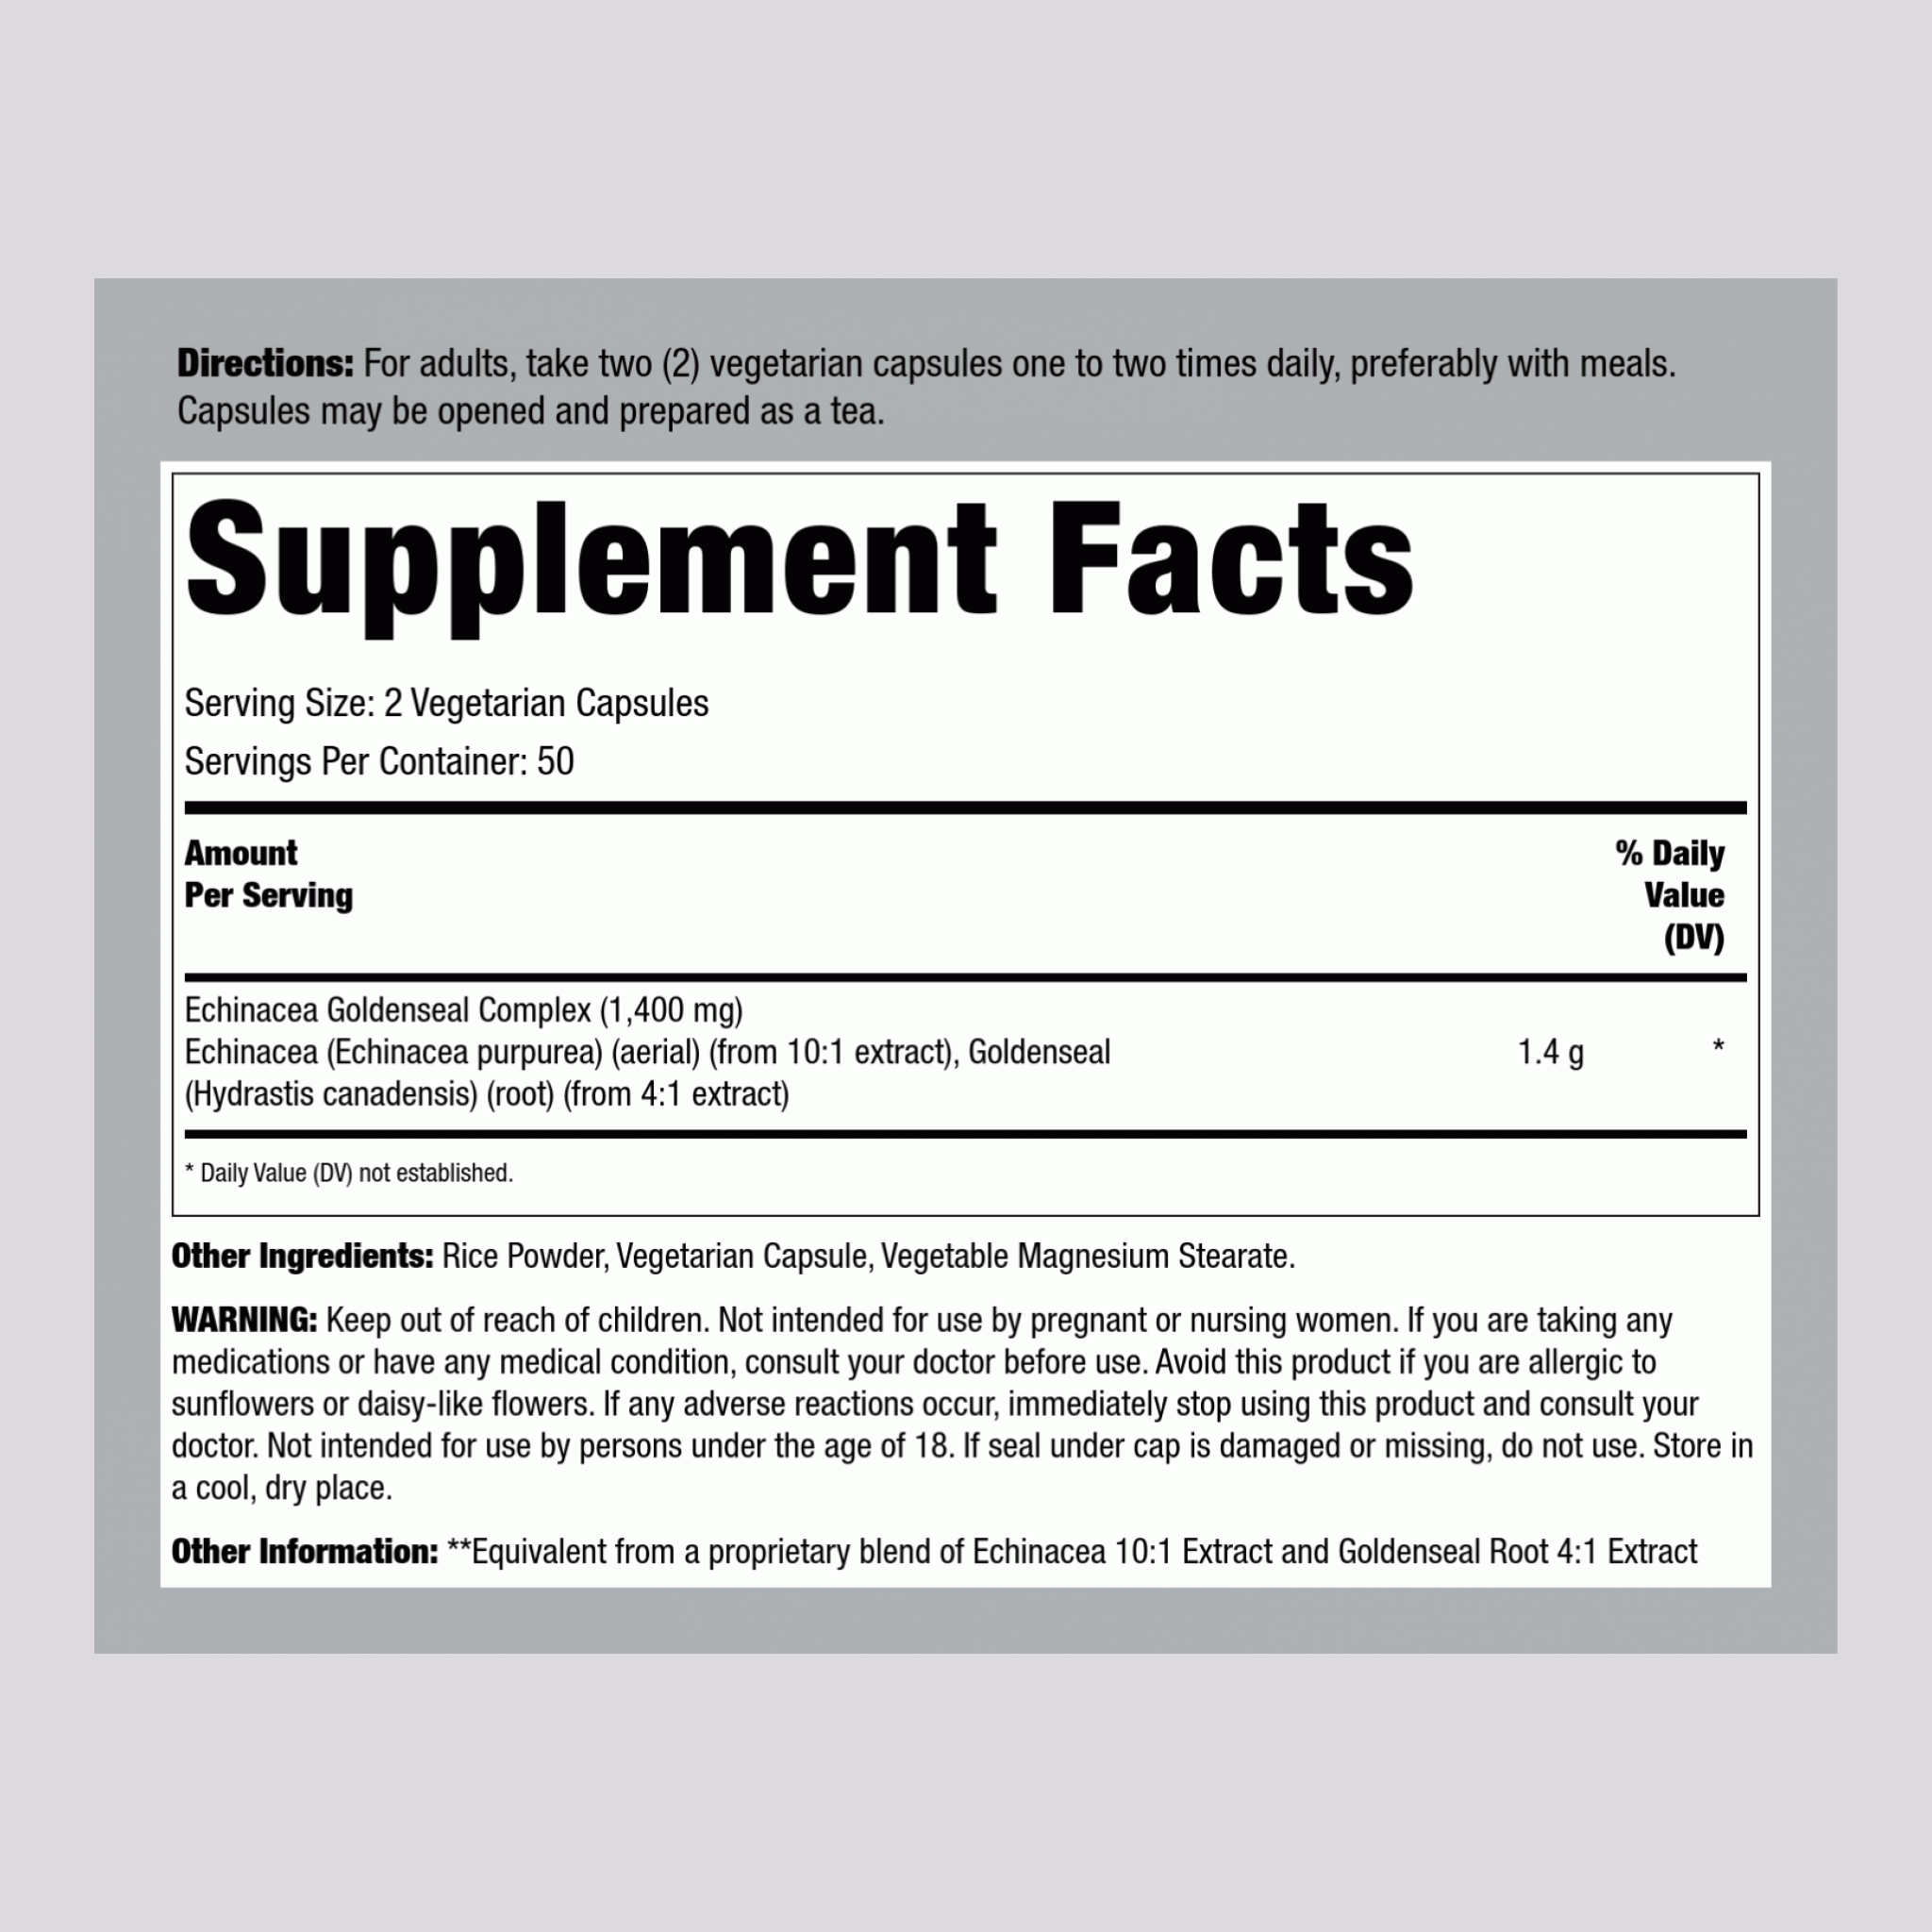 Echinacea Goldenseal, 1400 mg (per serving), 100 Vegetarian Capsules